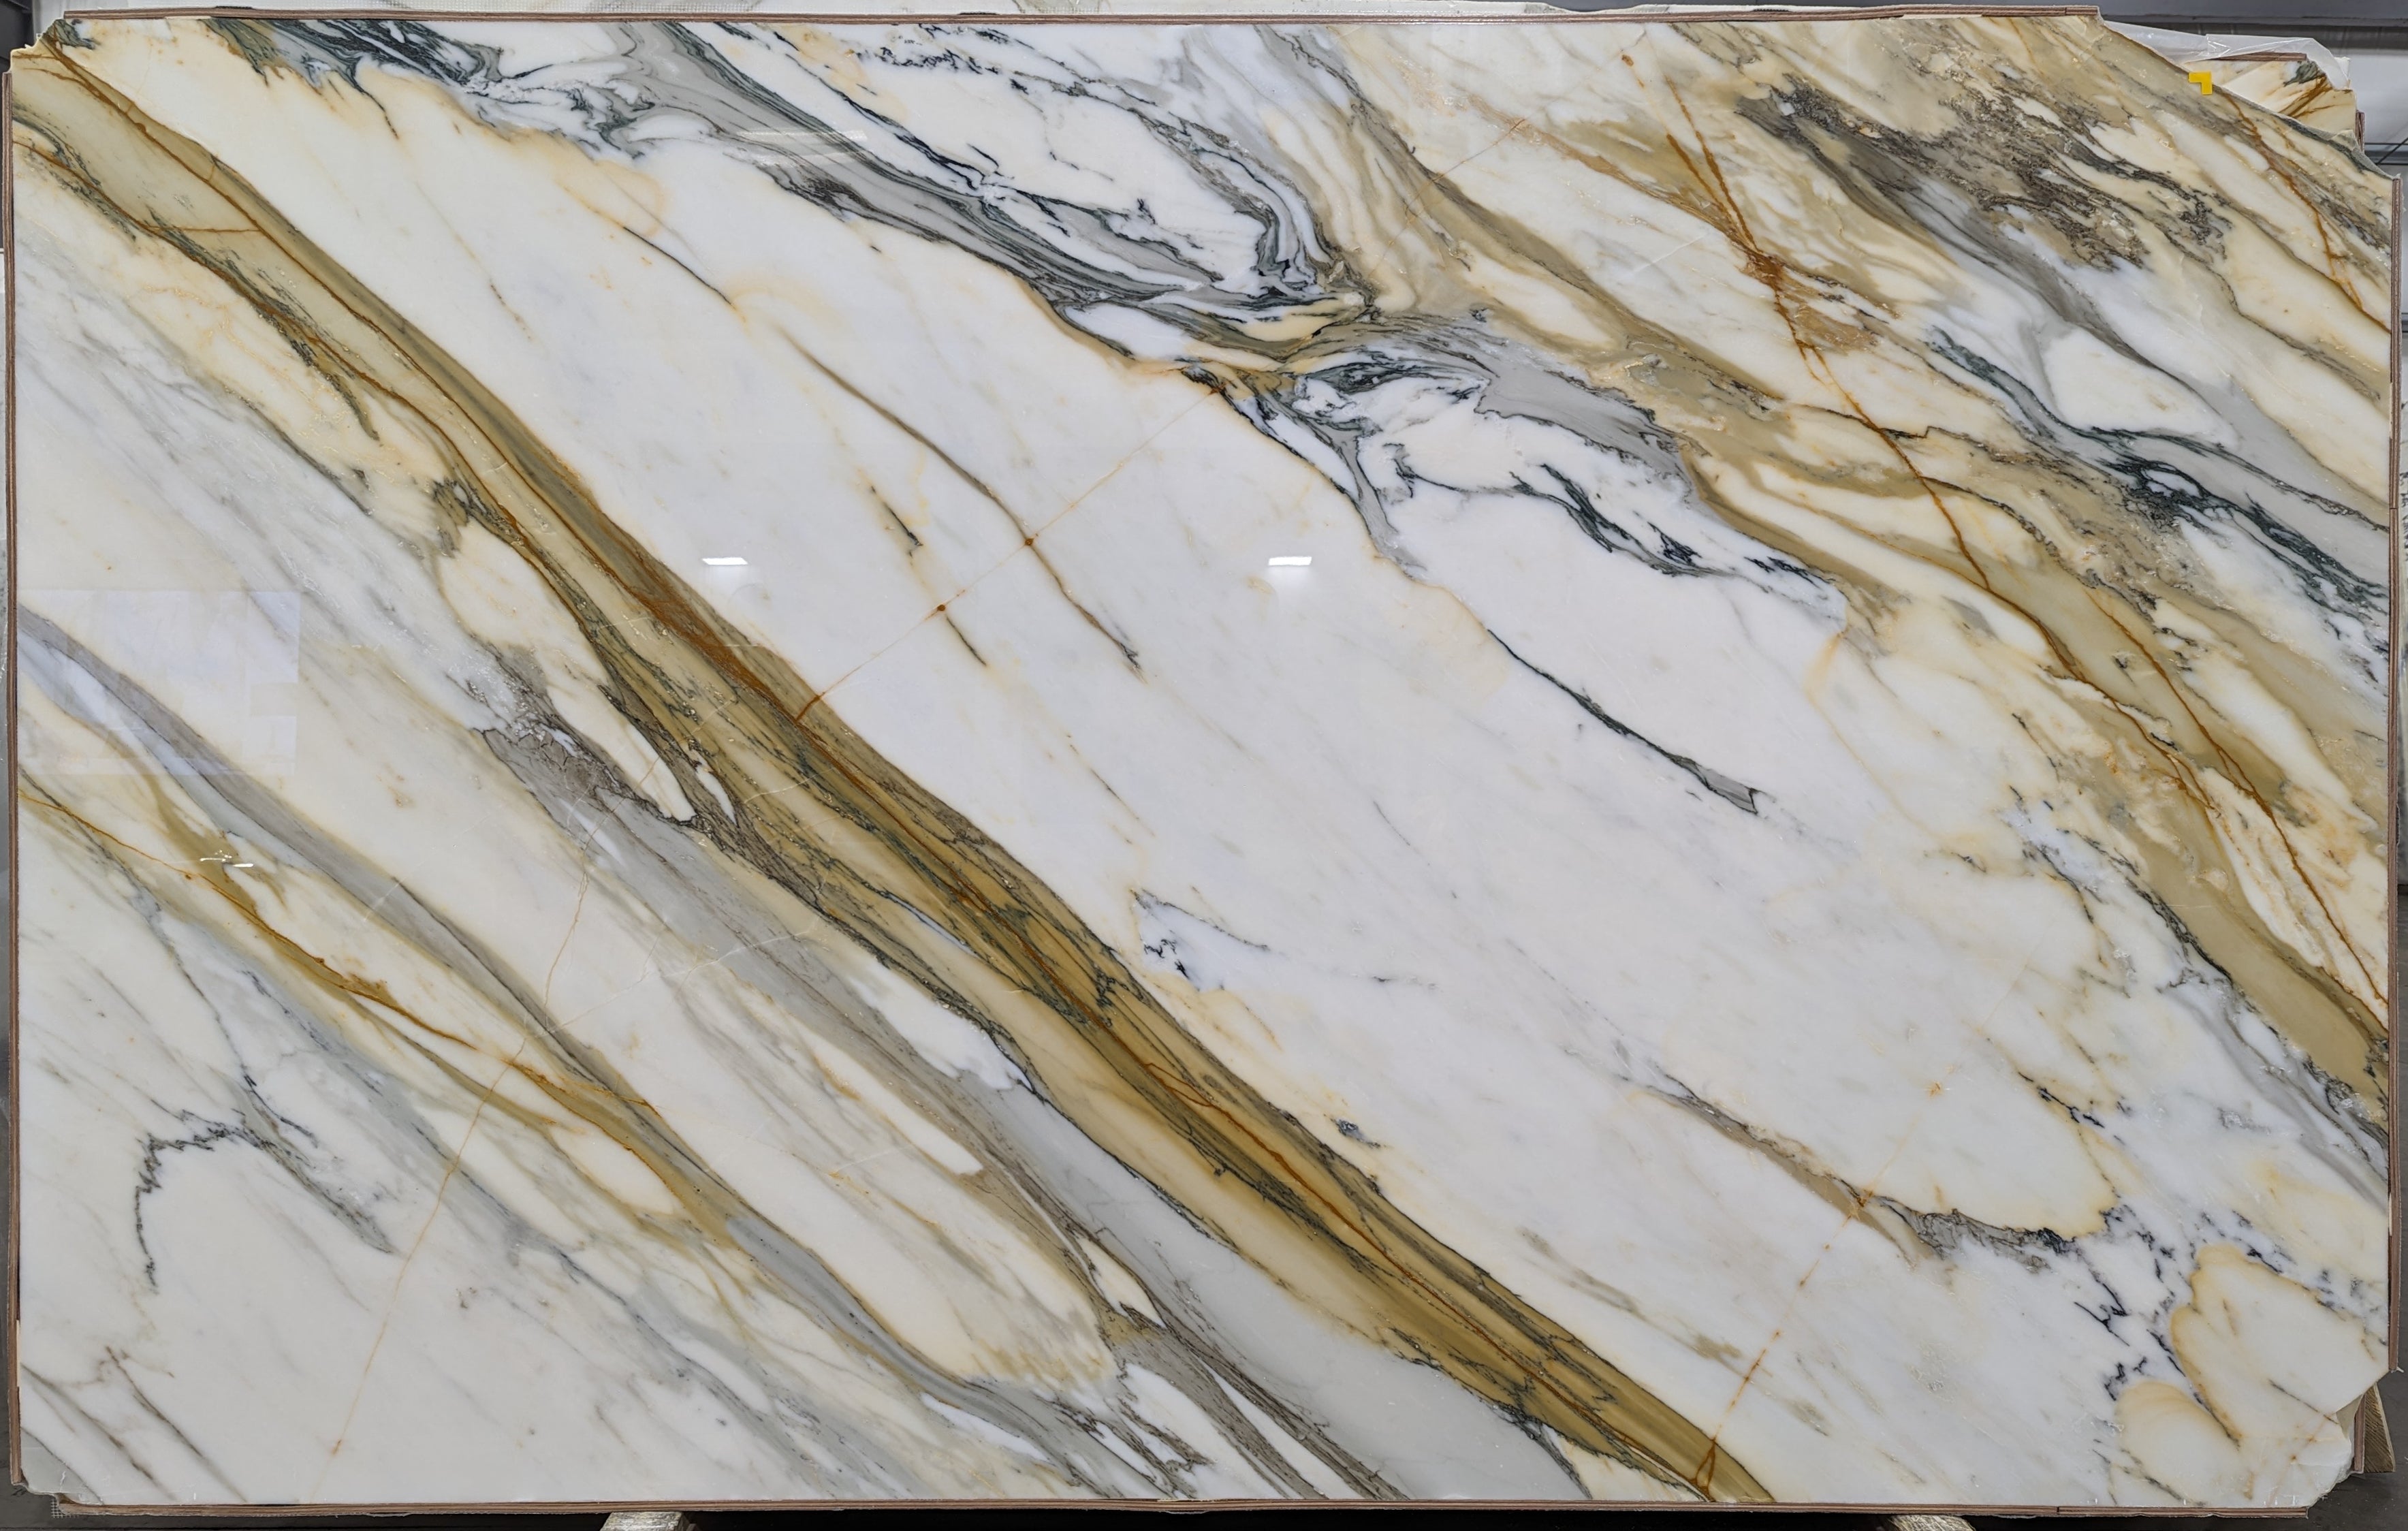  Calacatta Macchia Vecchia Marble Slab 3/4 - 26095#59 -  66x95 